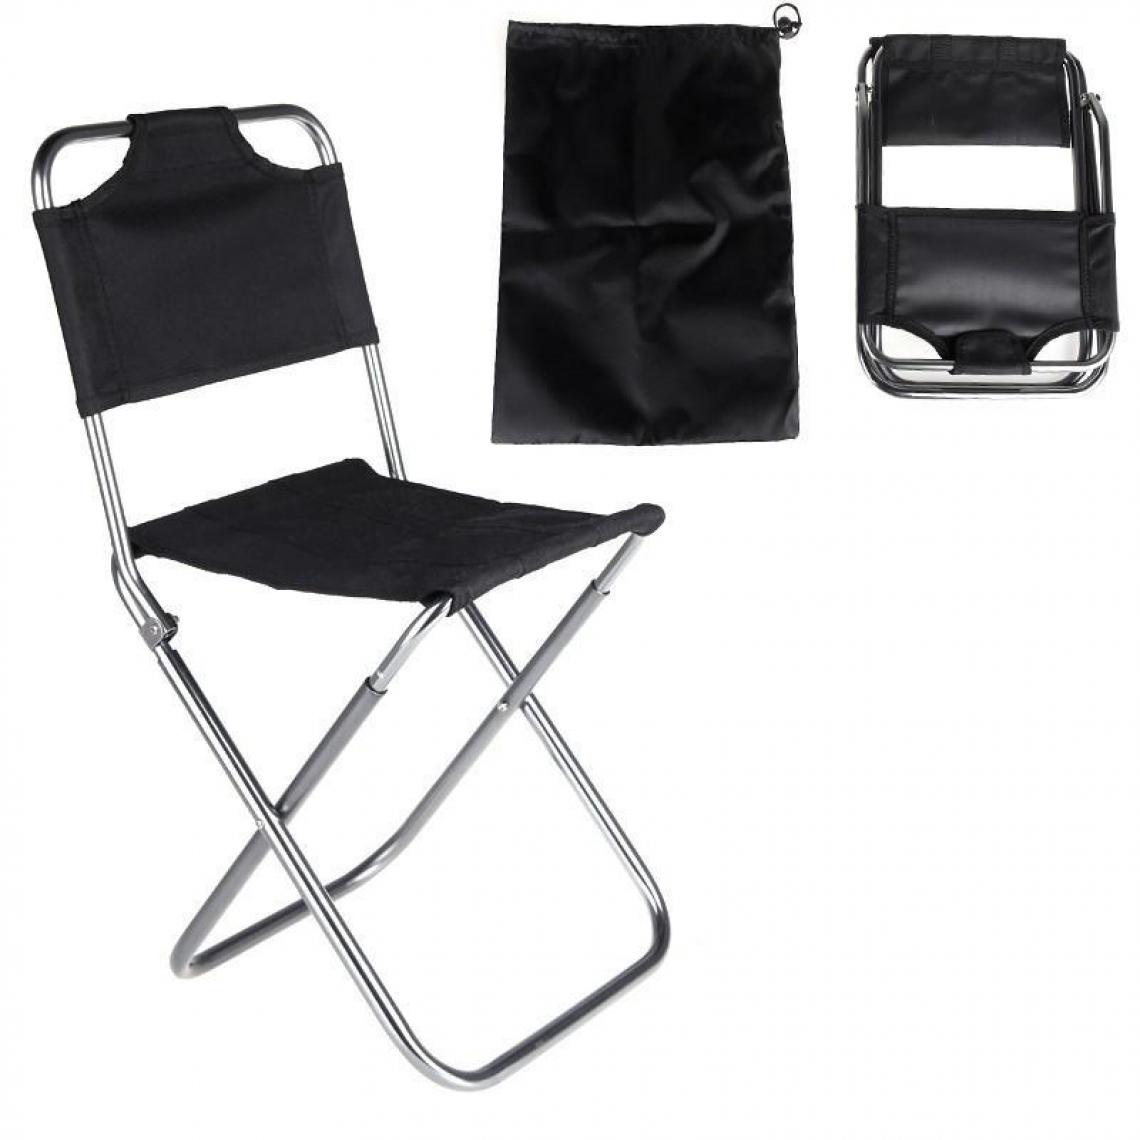 Justgreenbox - Chaise pliante portative en tissu Oxford en aluminium pour camping de pêche en plein air avec sac de transport pour dossier - 32883759410 - Chaises